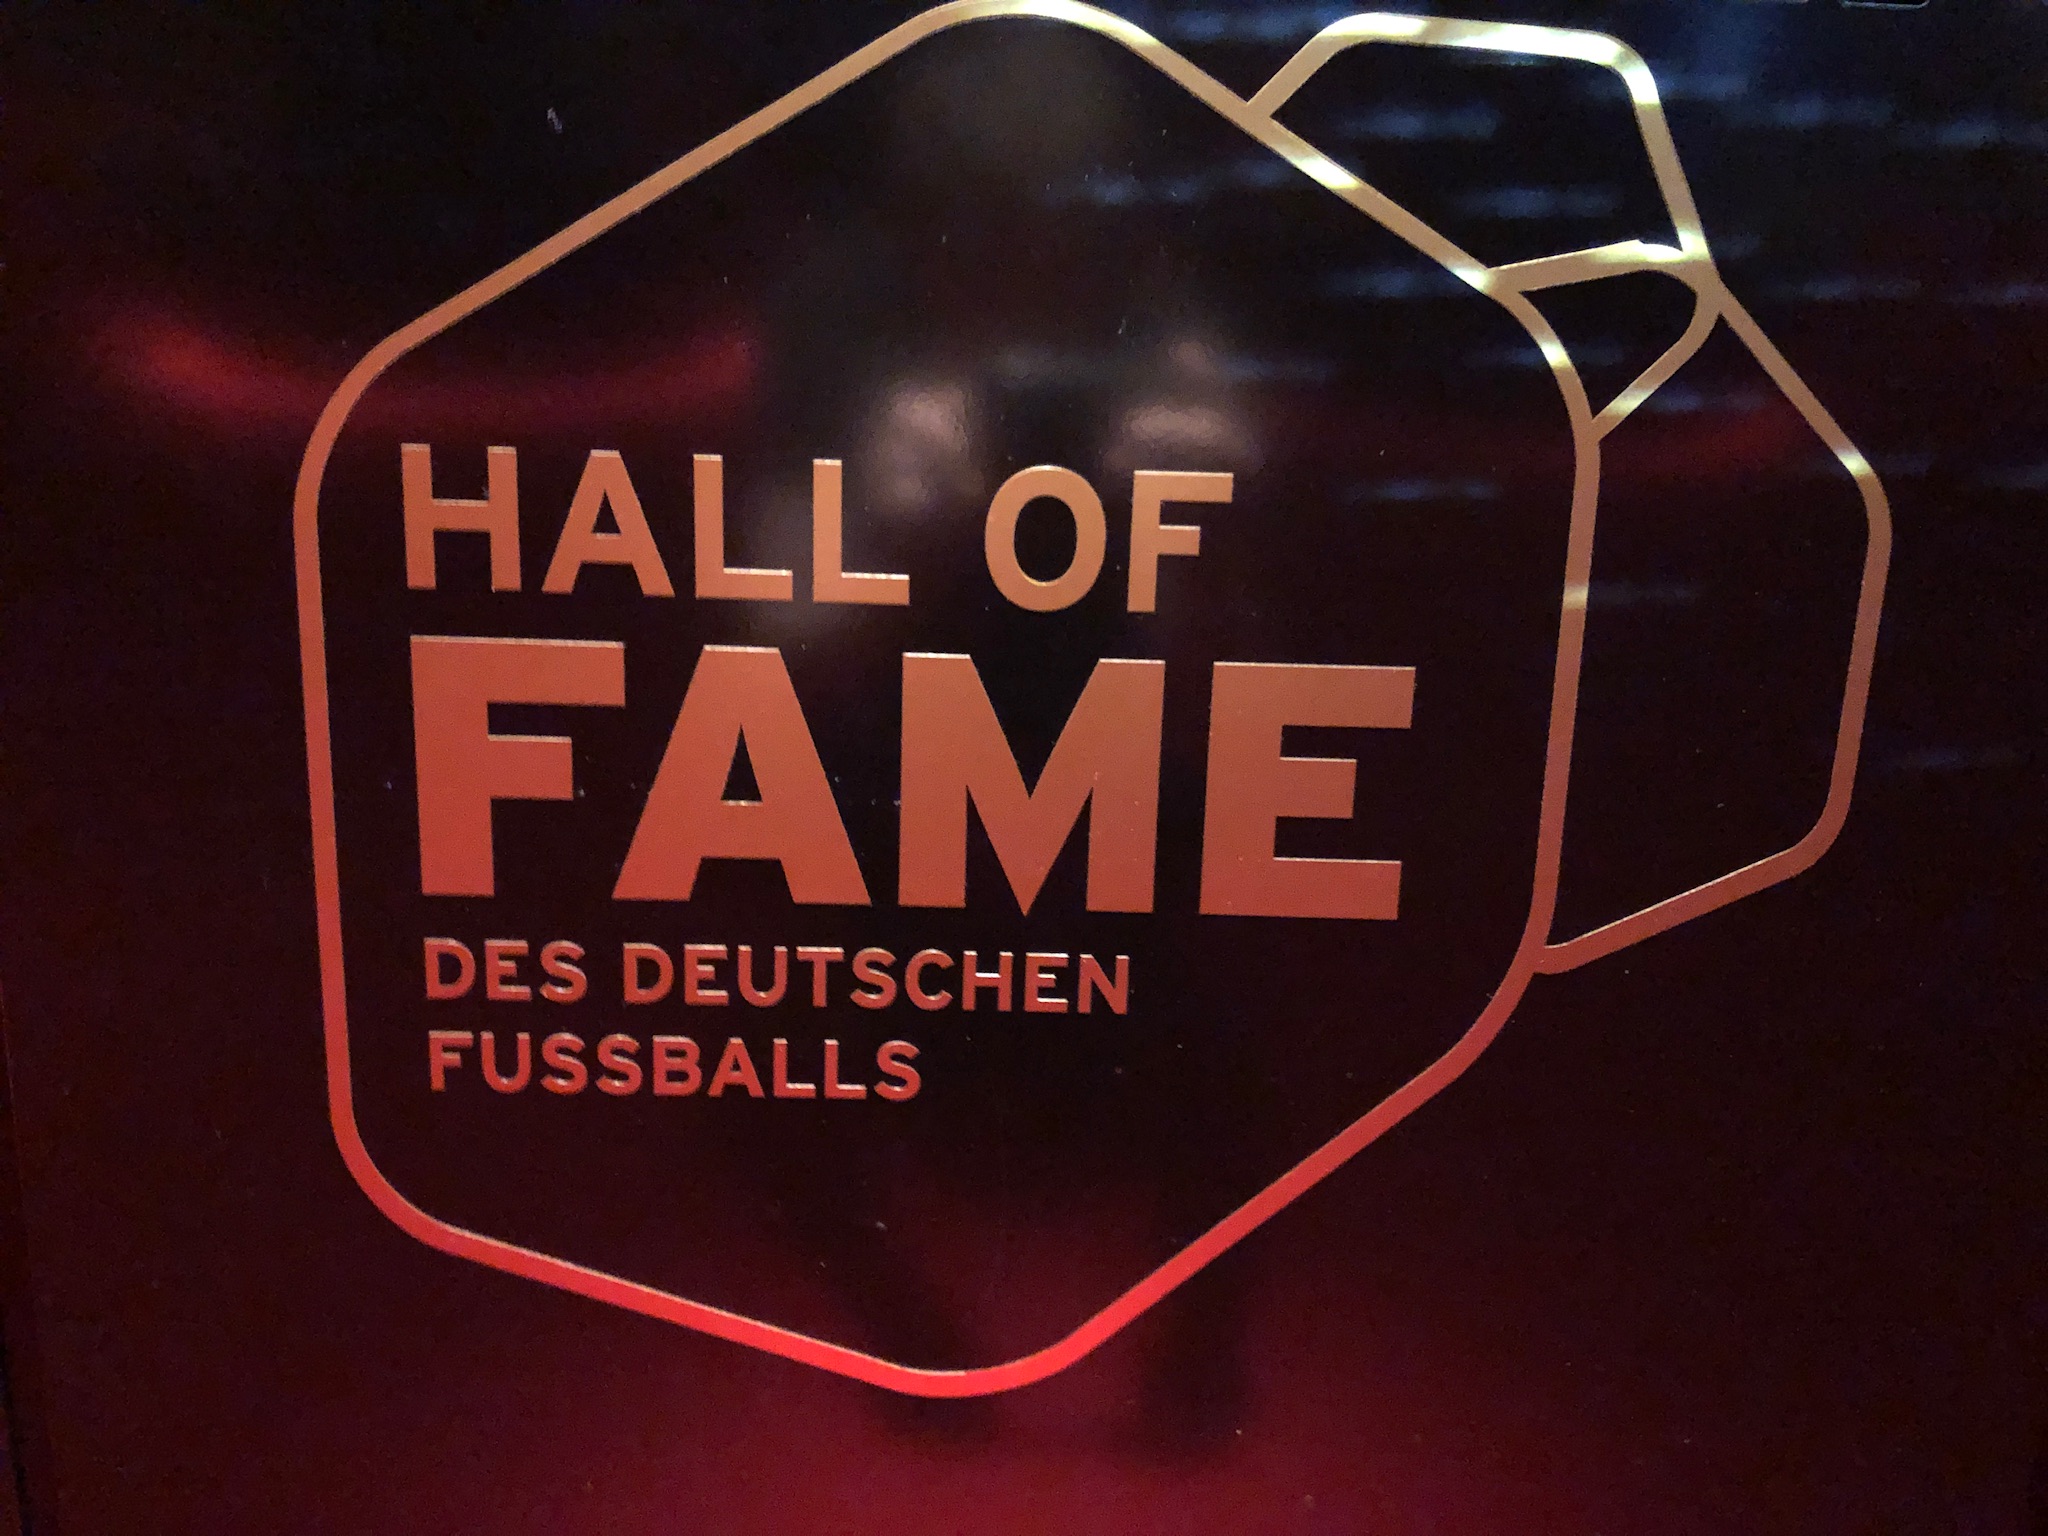 Hall of Fame, DFB